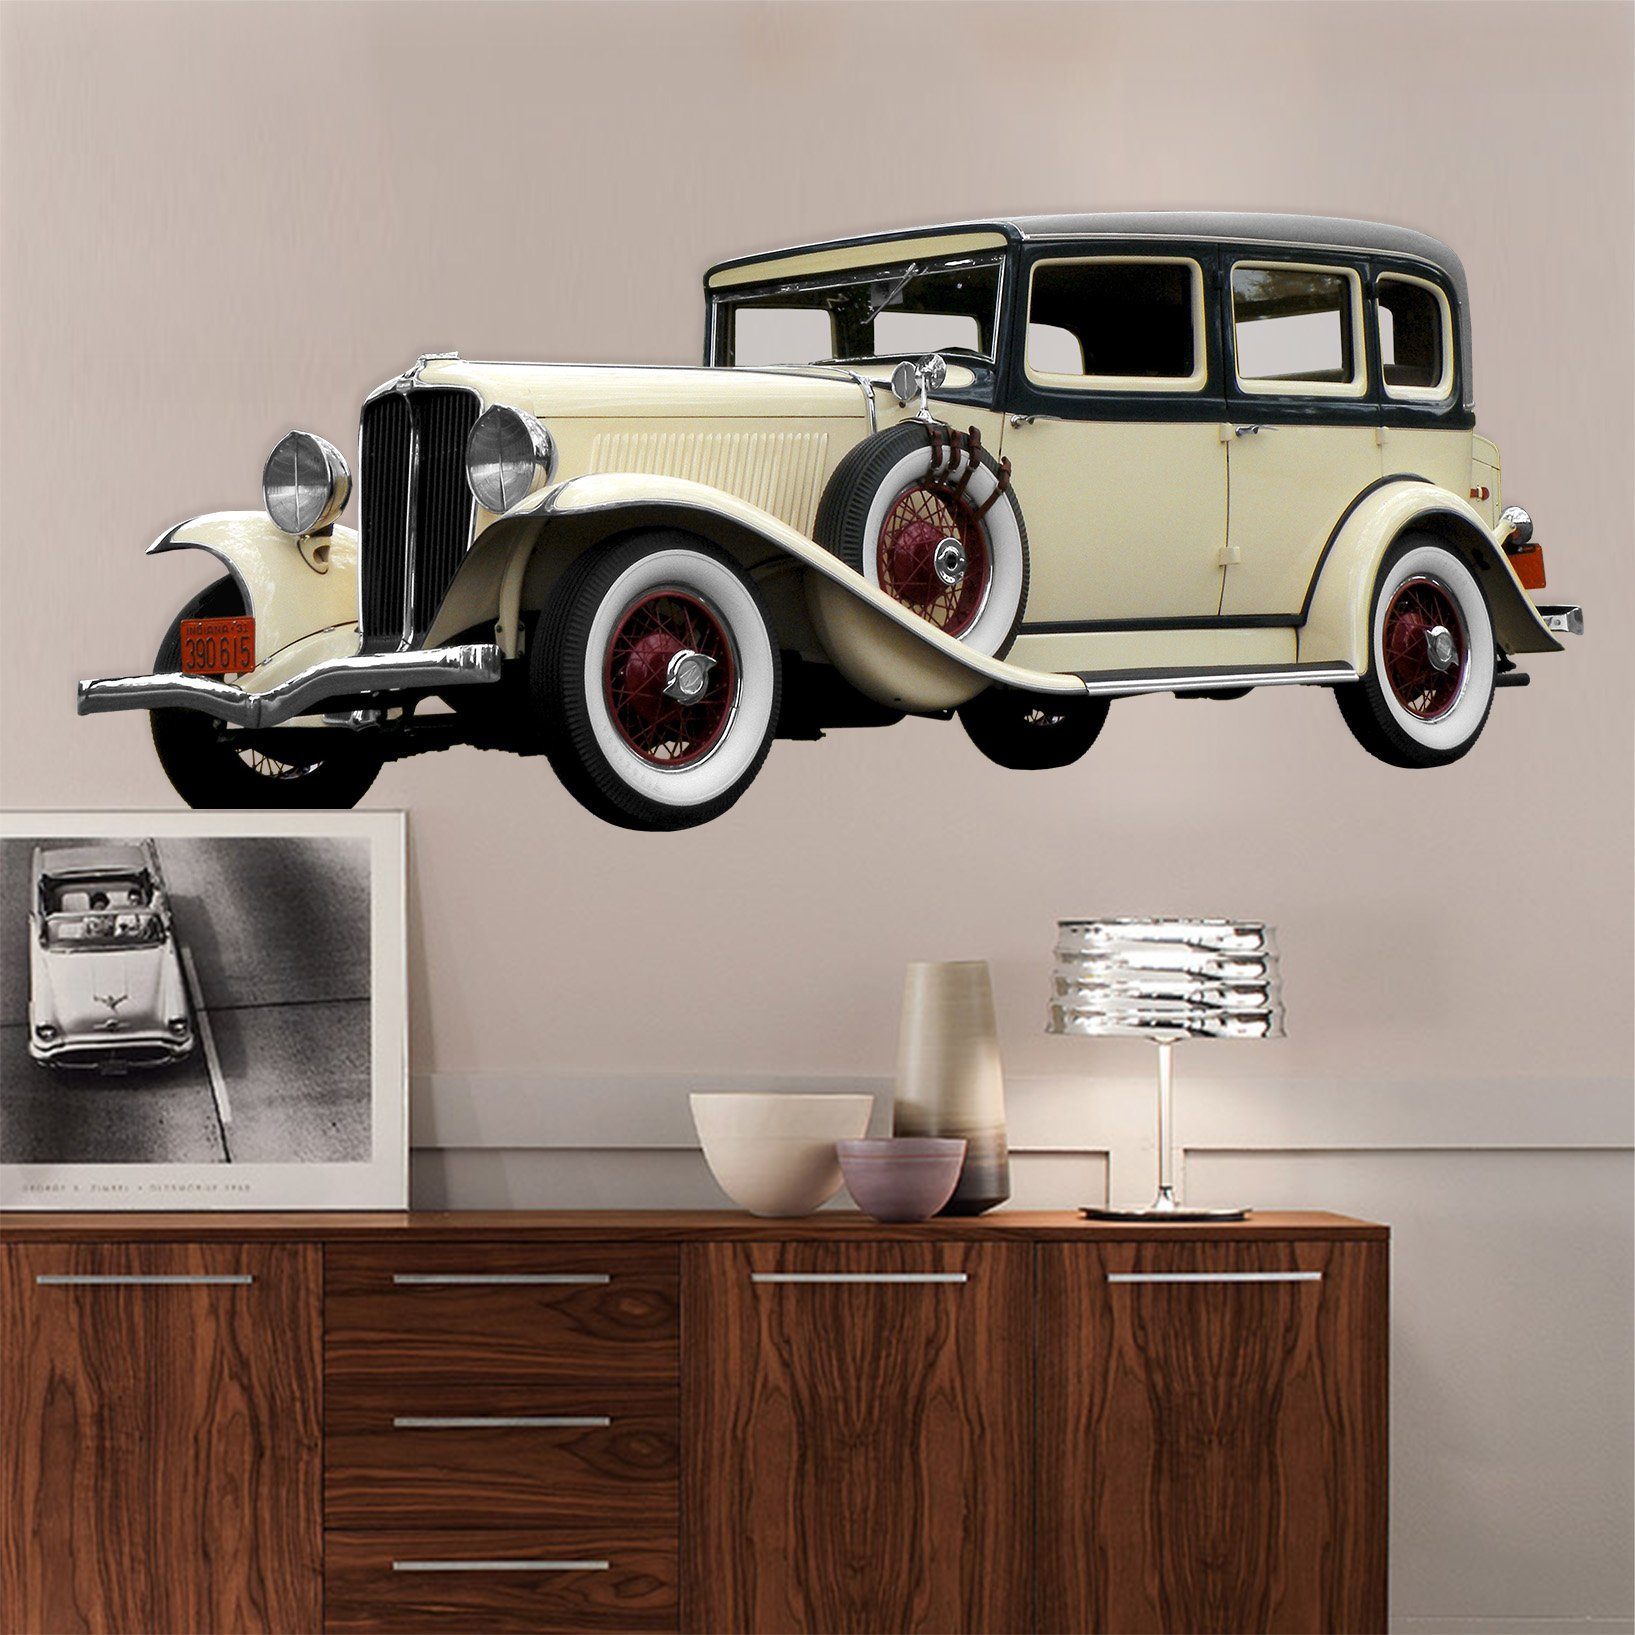 3D Classiker 0138 Vehicles Wallpaper AJ Wallpaper 